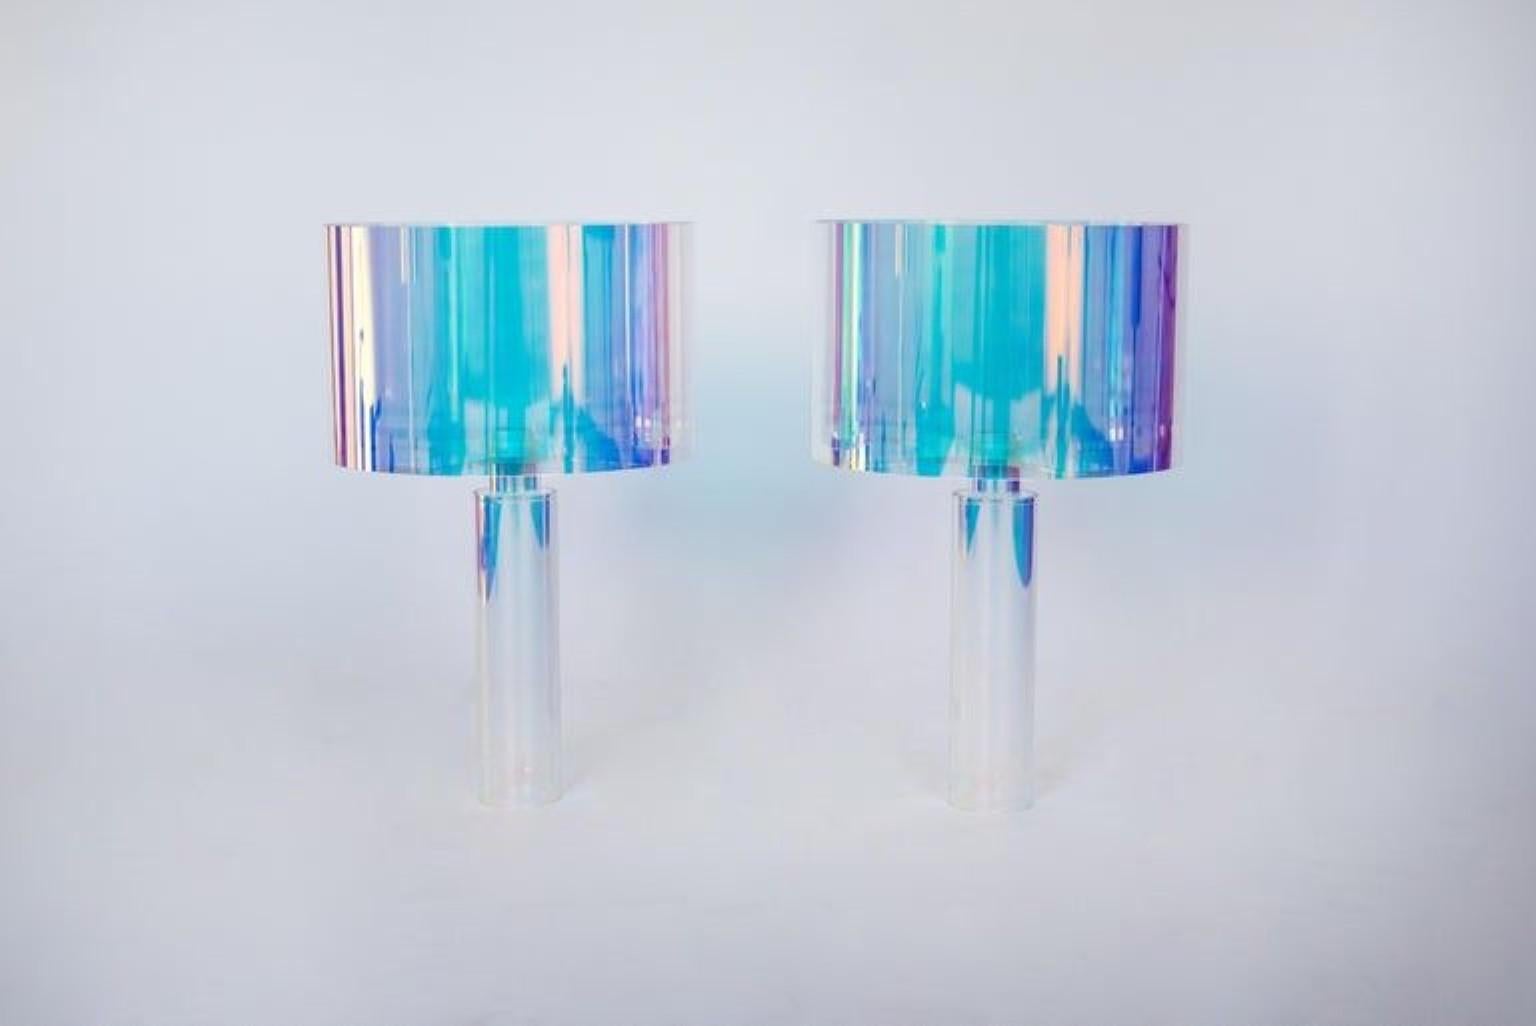 Paar kinetische Farben Tischlampen von Brajak Vitberg.
MATERIALIEN: Plexiglas + dichroitische Folie
Lampenschirm aus weißer oder schwarzer Baumwolle, Kabel aus Baumwolle.
Abmessungen: 55 x 35 x 35 cm.

Bijelic und Brajak sind zwei Architekten aus